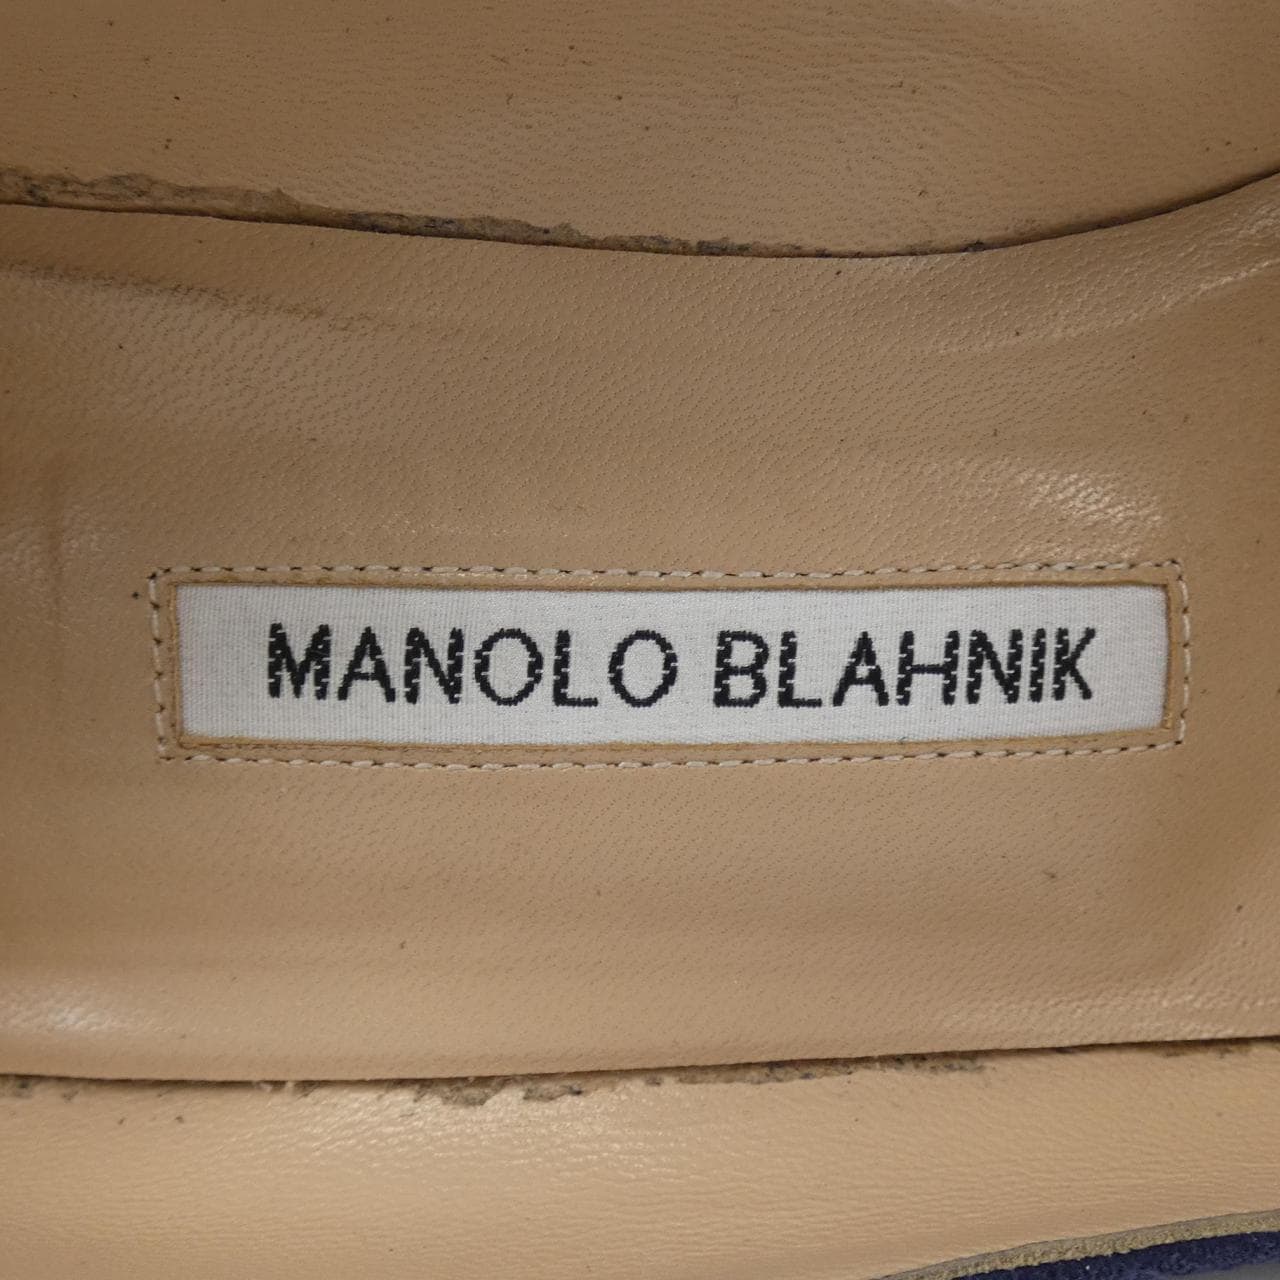 MANOLO BLAHNIK manolo blahnik pumps